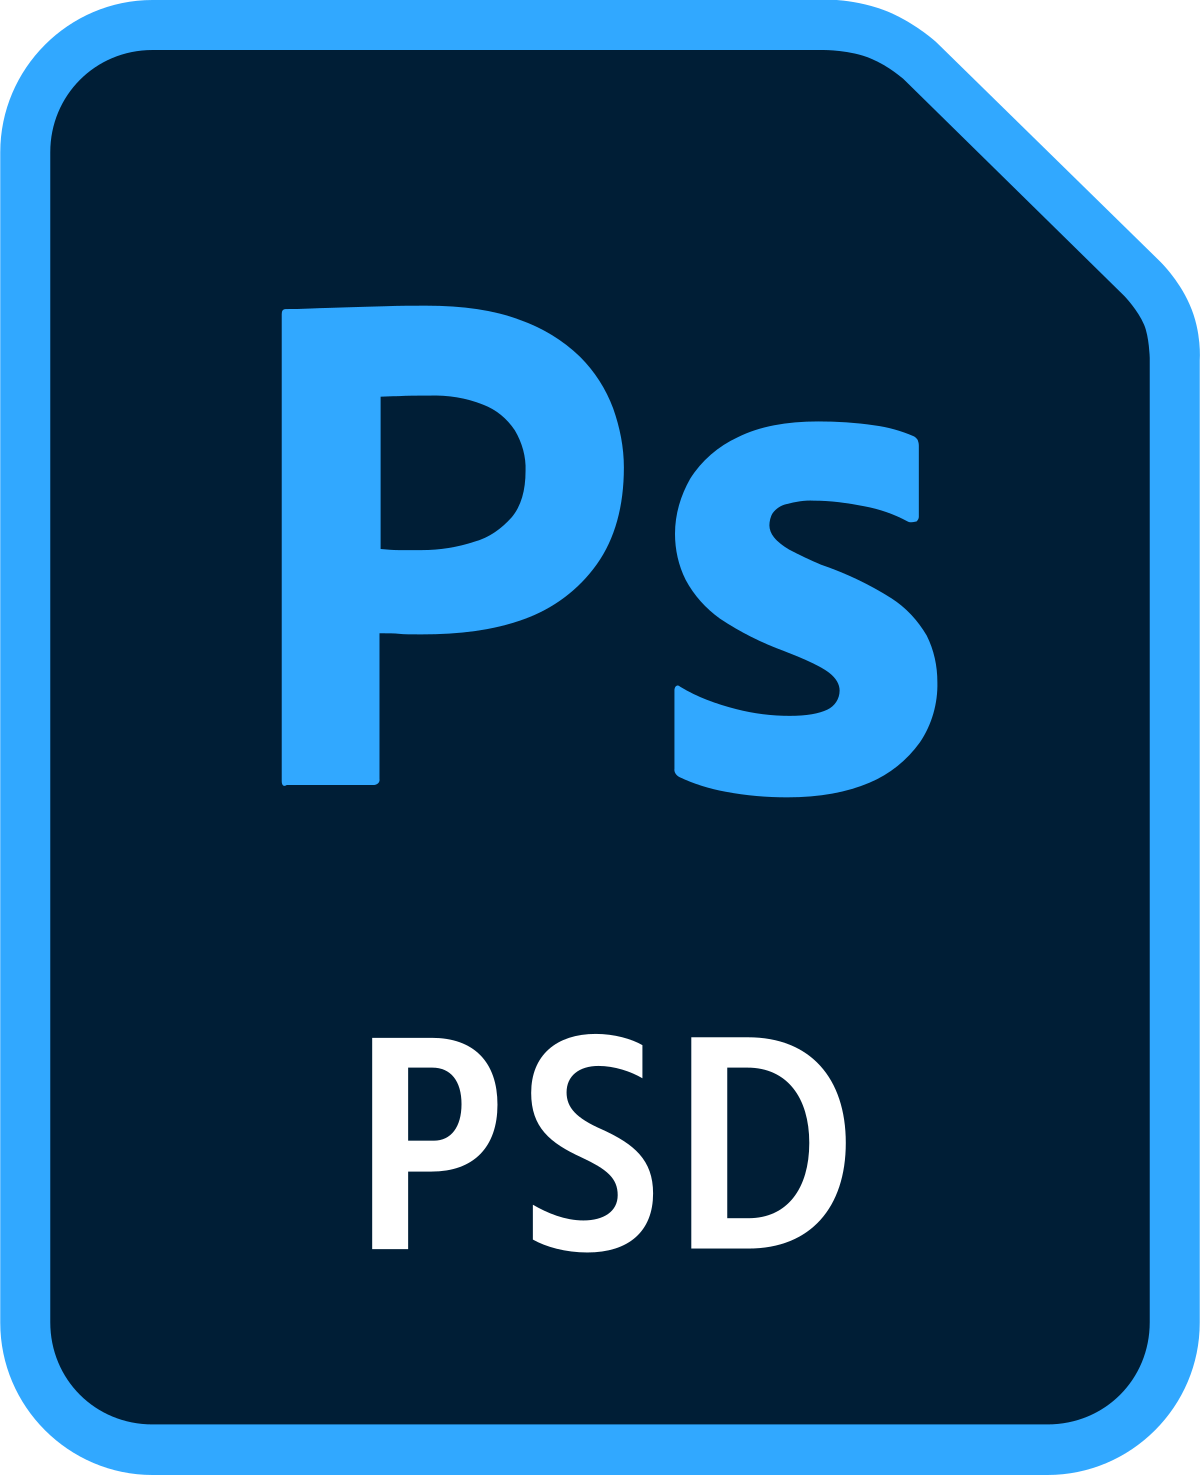 ПСД файл. Формат значок. PSD файл. Иконка ПСД.